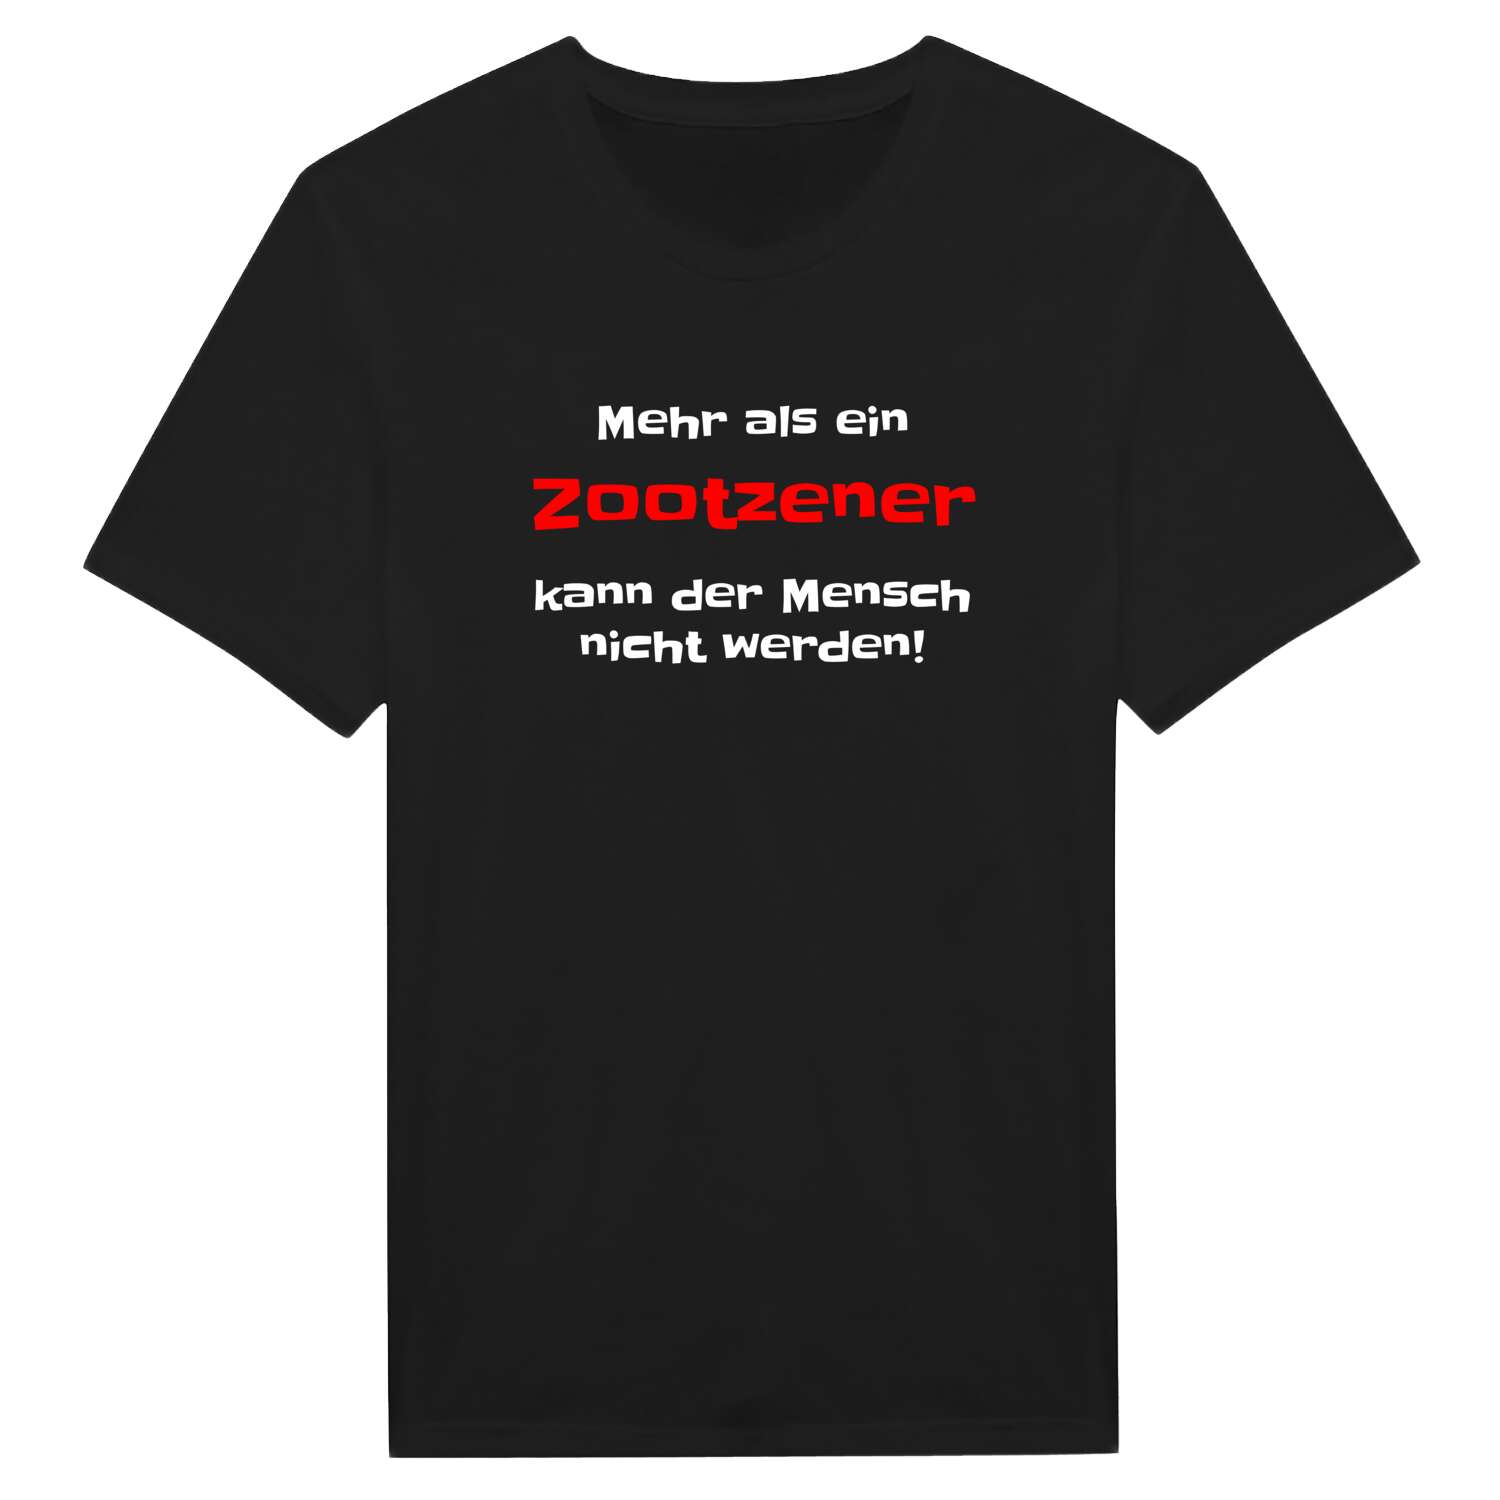 Zootzen T-Shirt »Mehr als ein«